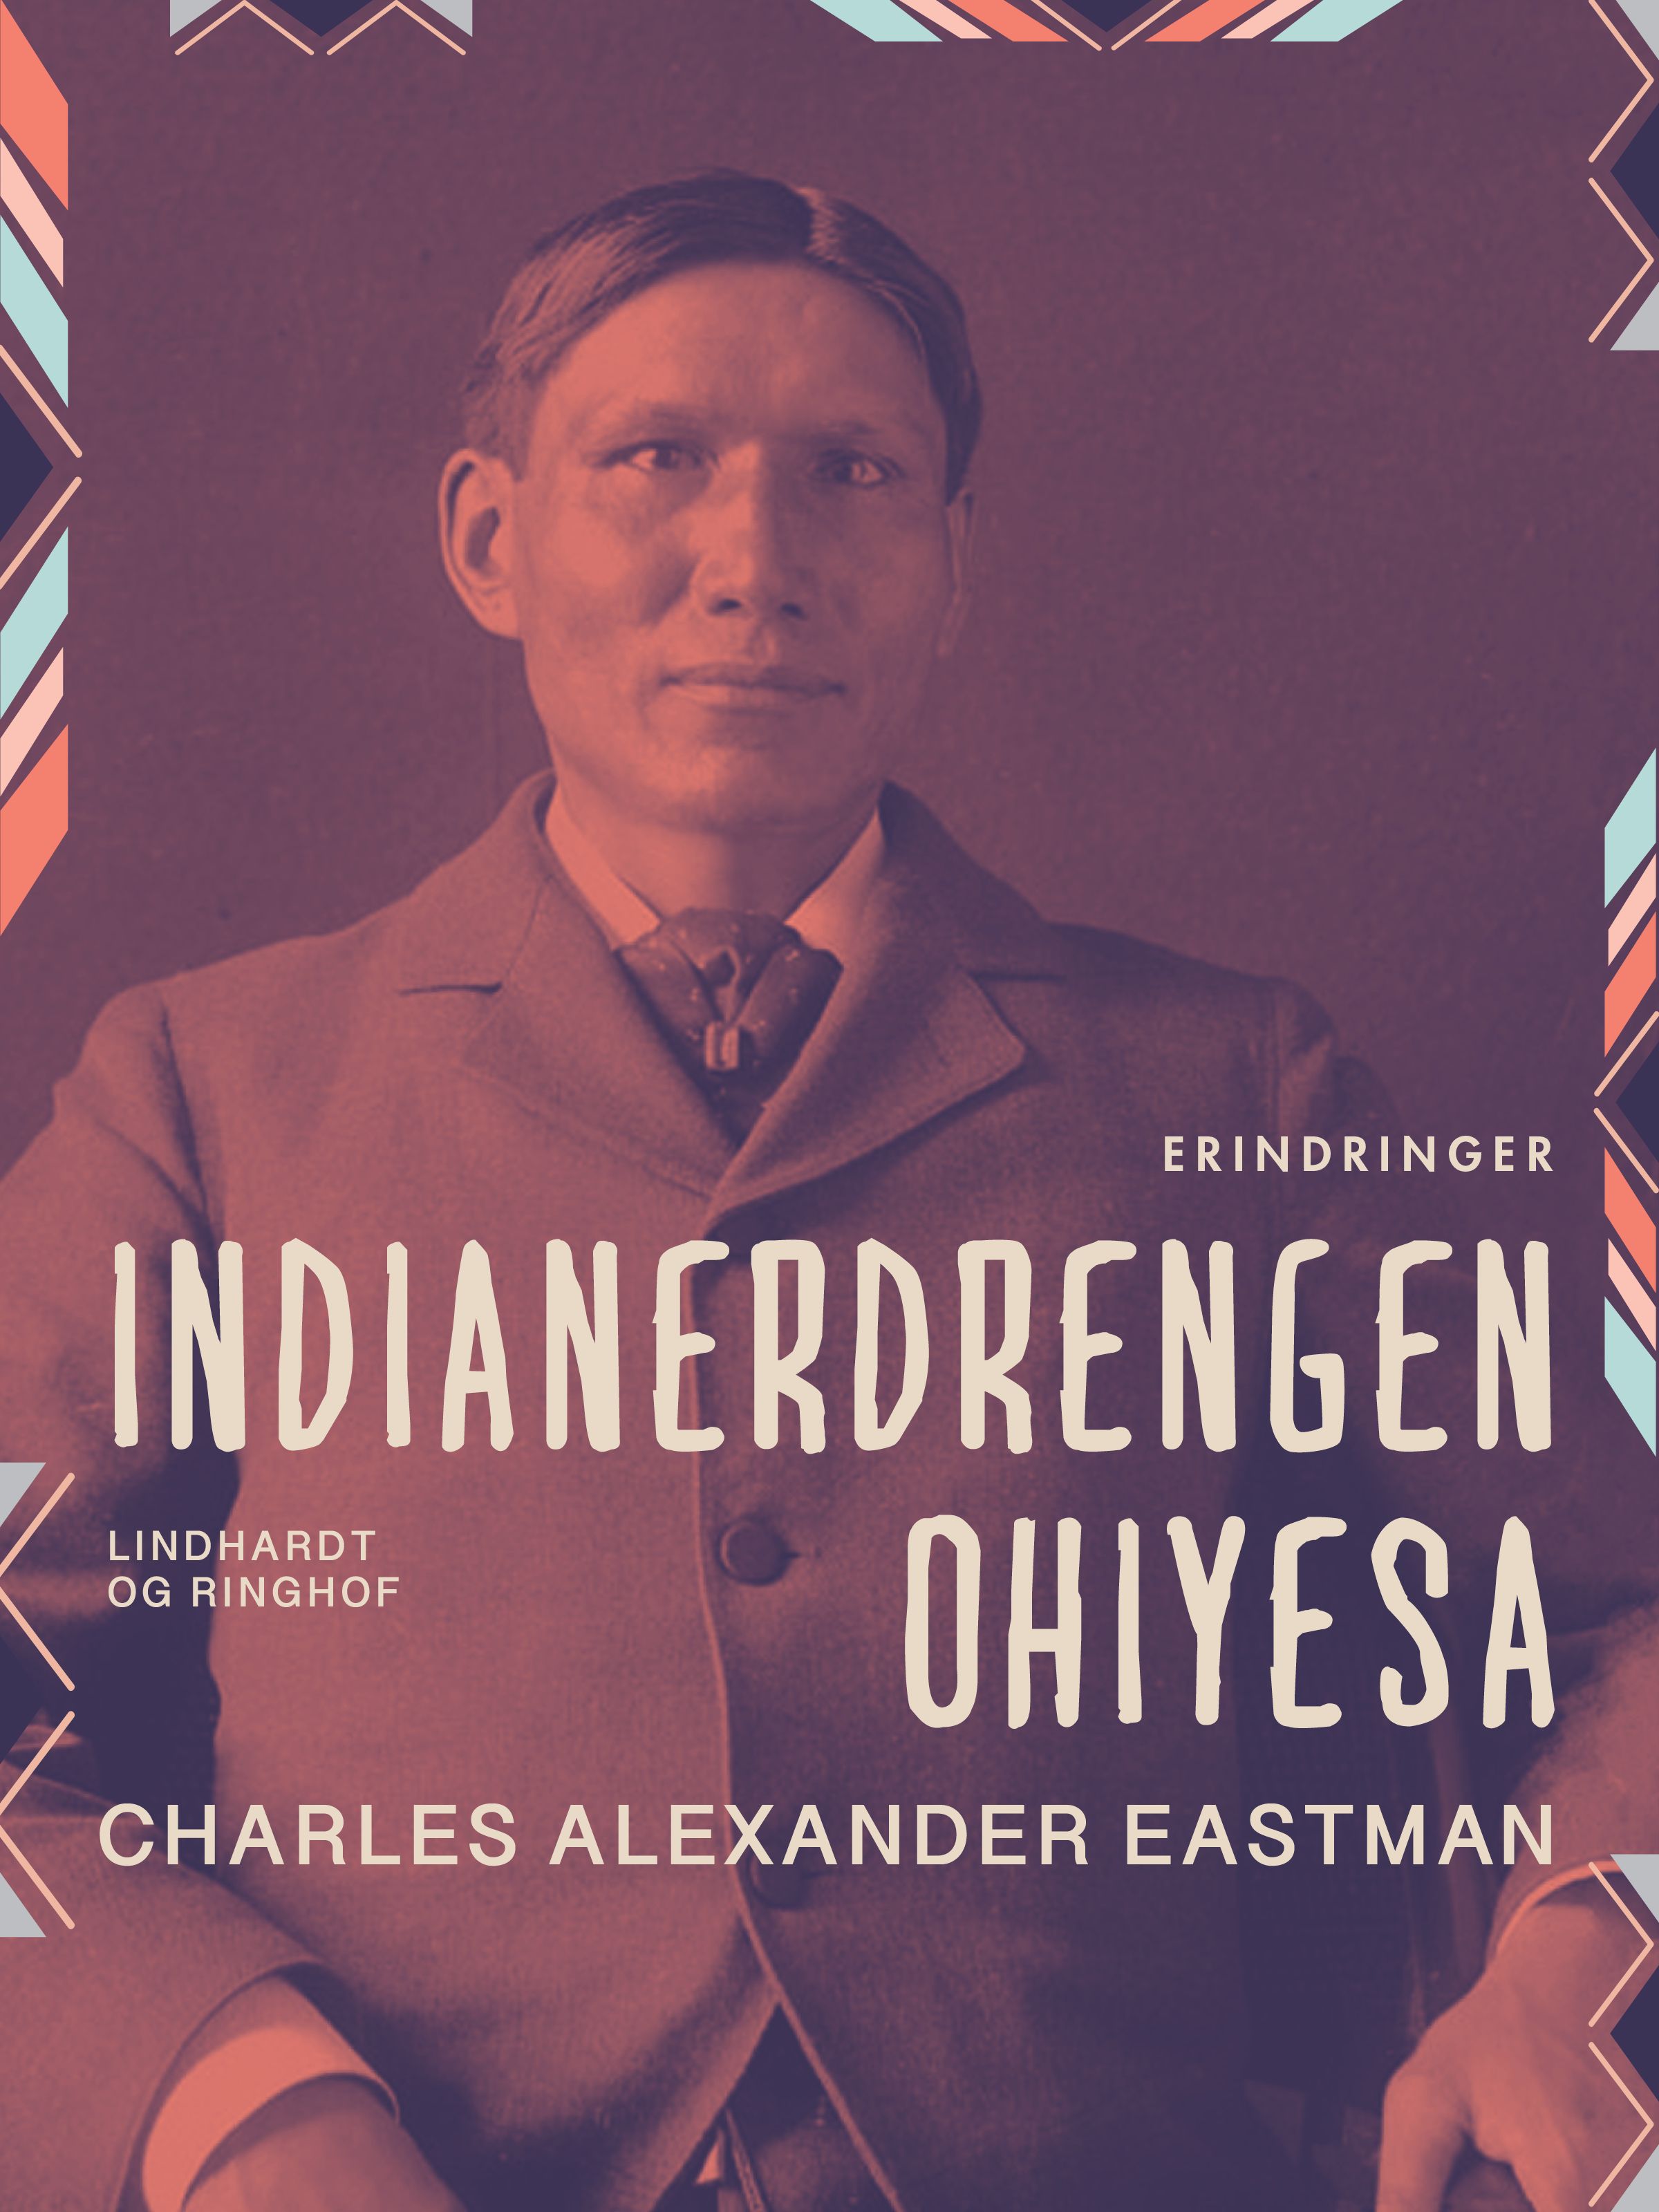 Indianerdrengen Ohiyesa, e-bog af Charles Alexander Eastman